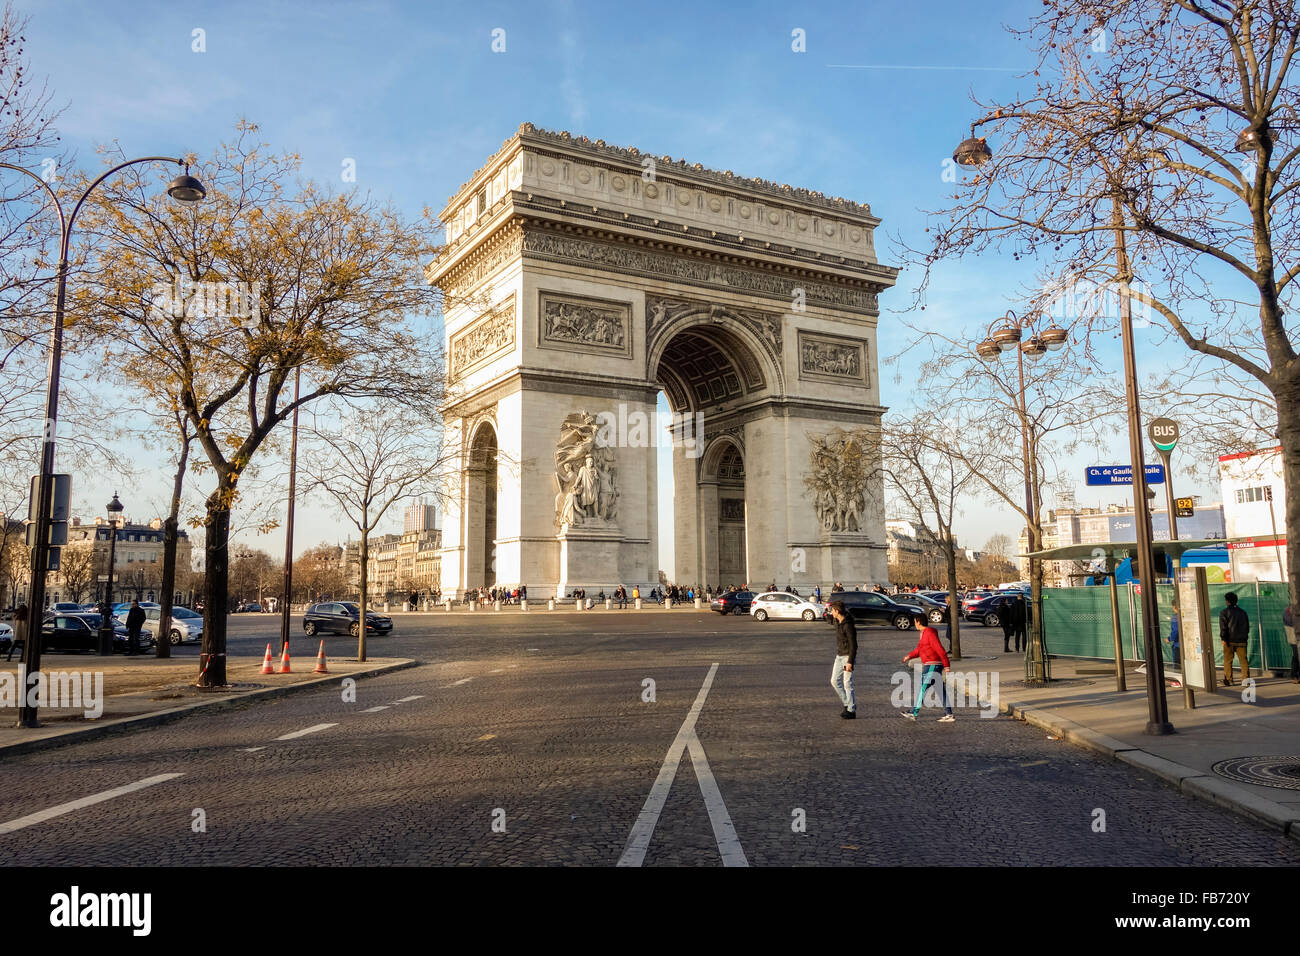 Arc de Triomphe de l'Étoile, de triomphe de l'étoile, Place Charles de Gaulle, Paris, France. Banque D'Images